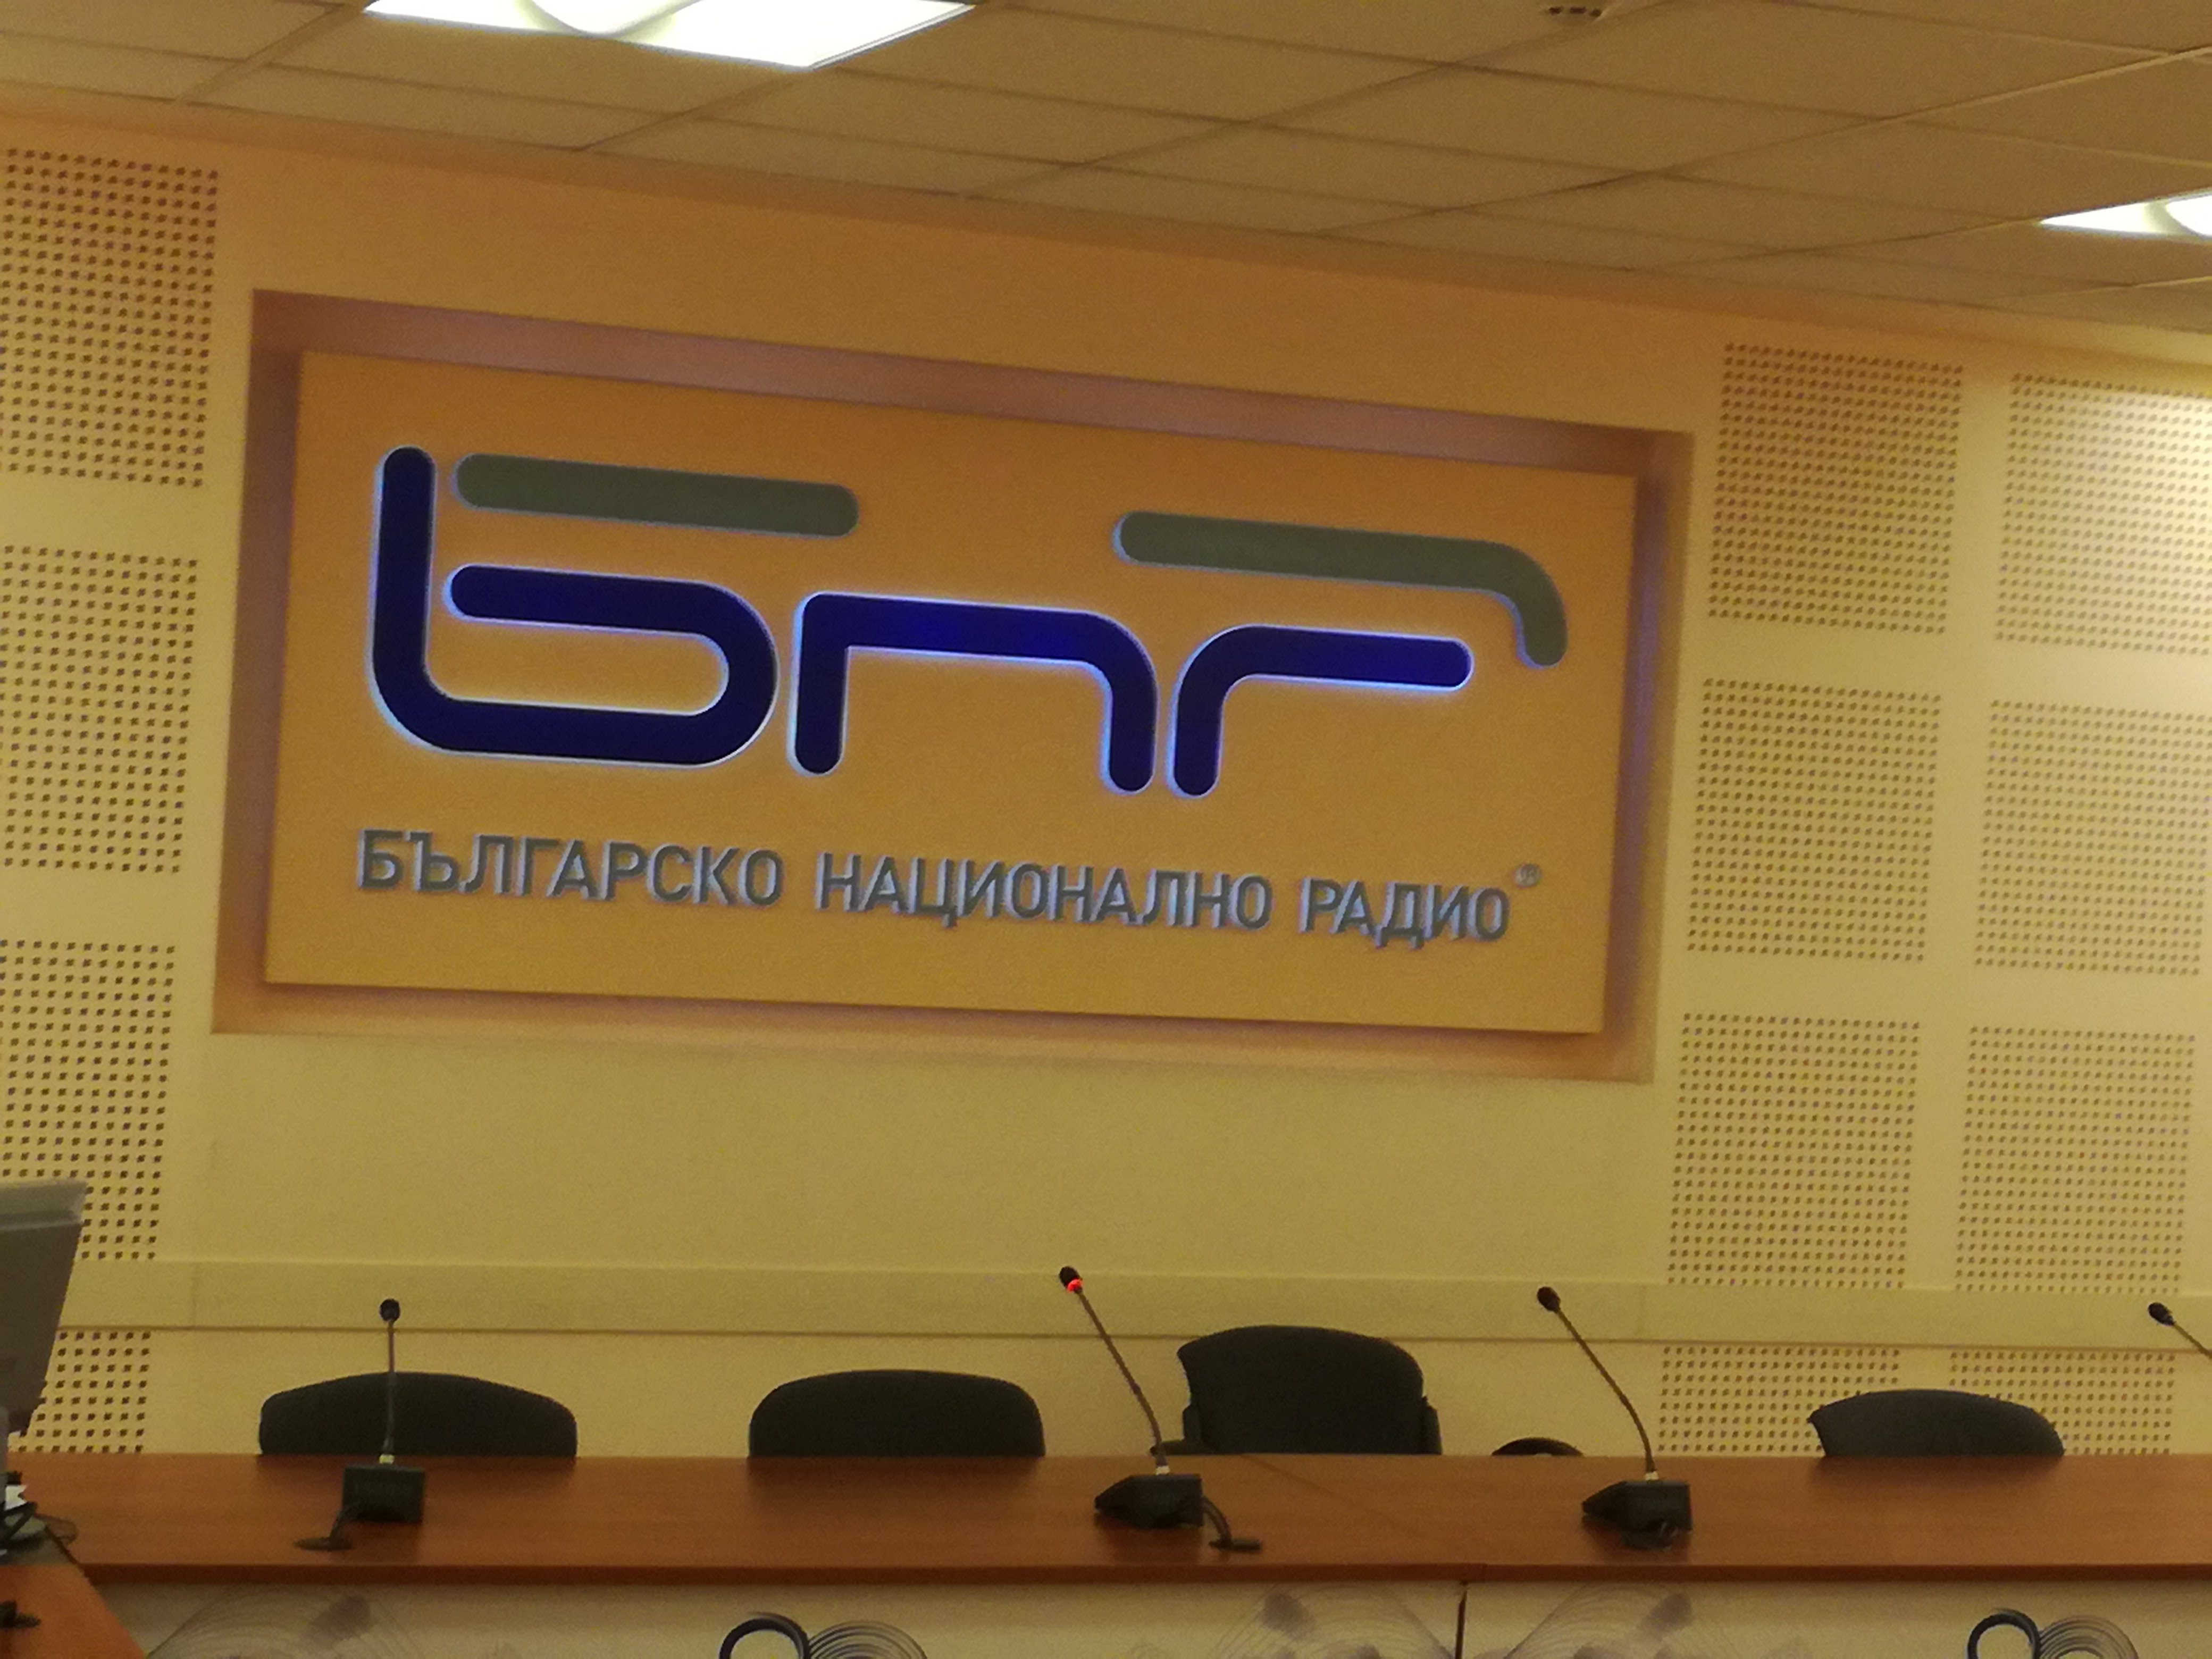 Българското национално радио отправя към слушателите и читателите на съдържание